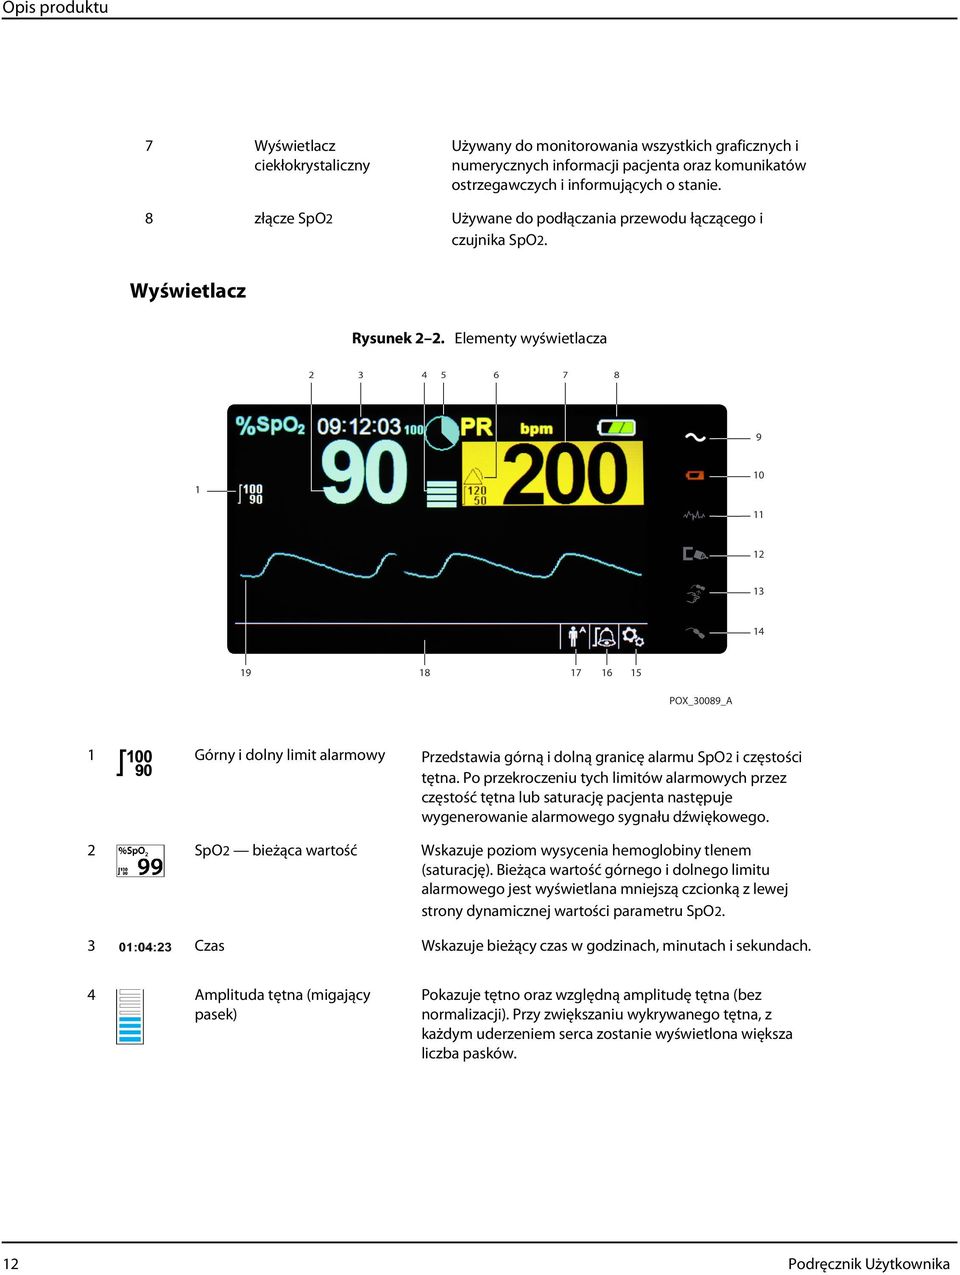 Elementy wyświetlacza 1 Górny i dolny limit alarmowy Przedstawia górną i dolną granicę alarmu SpO2 i częstości tętna.